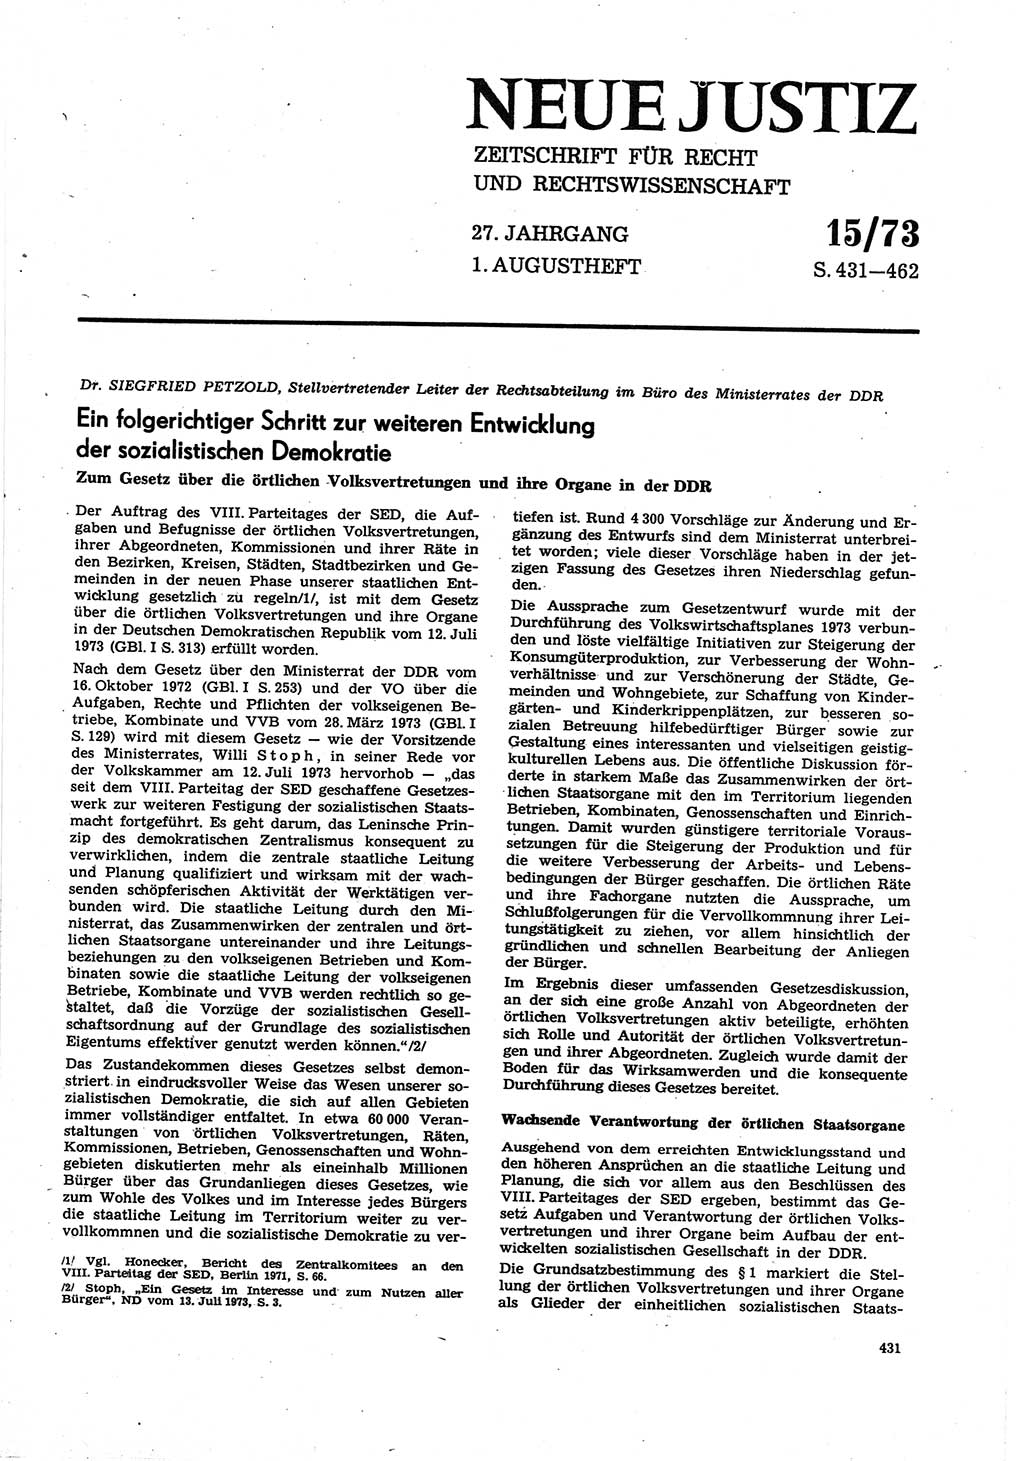 Neue Justiz (NJ), Zeitschrift für Recht und Rechtswissenschaft [Deutsche Demokratische Republik (DDR)], 27. Jahrgang 1973, Seite 431 (NJ DDR 1973, S. 431)